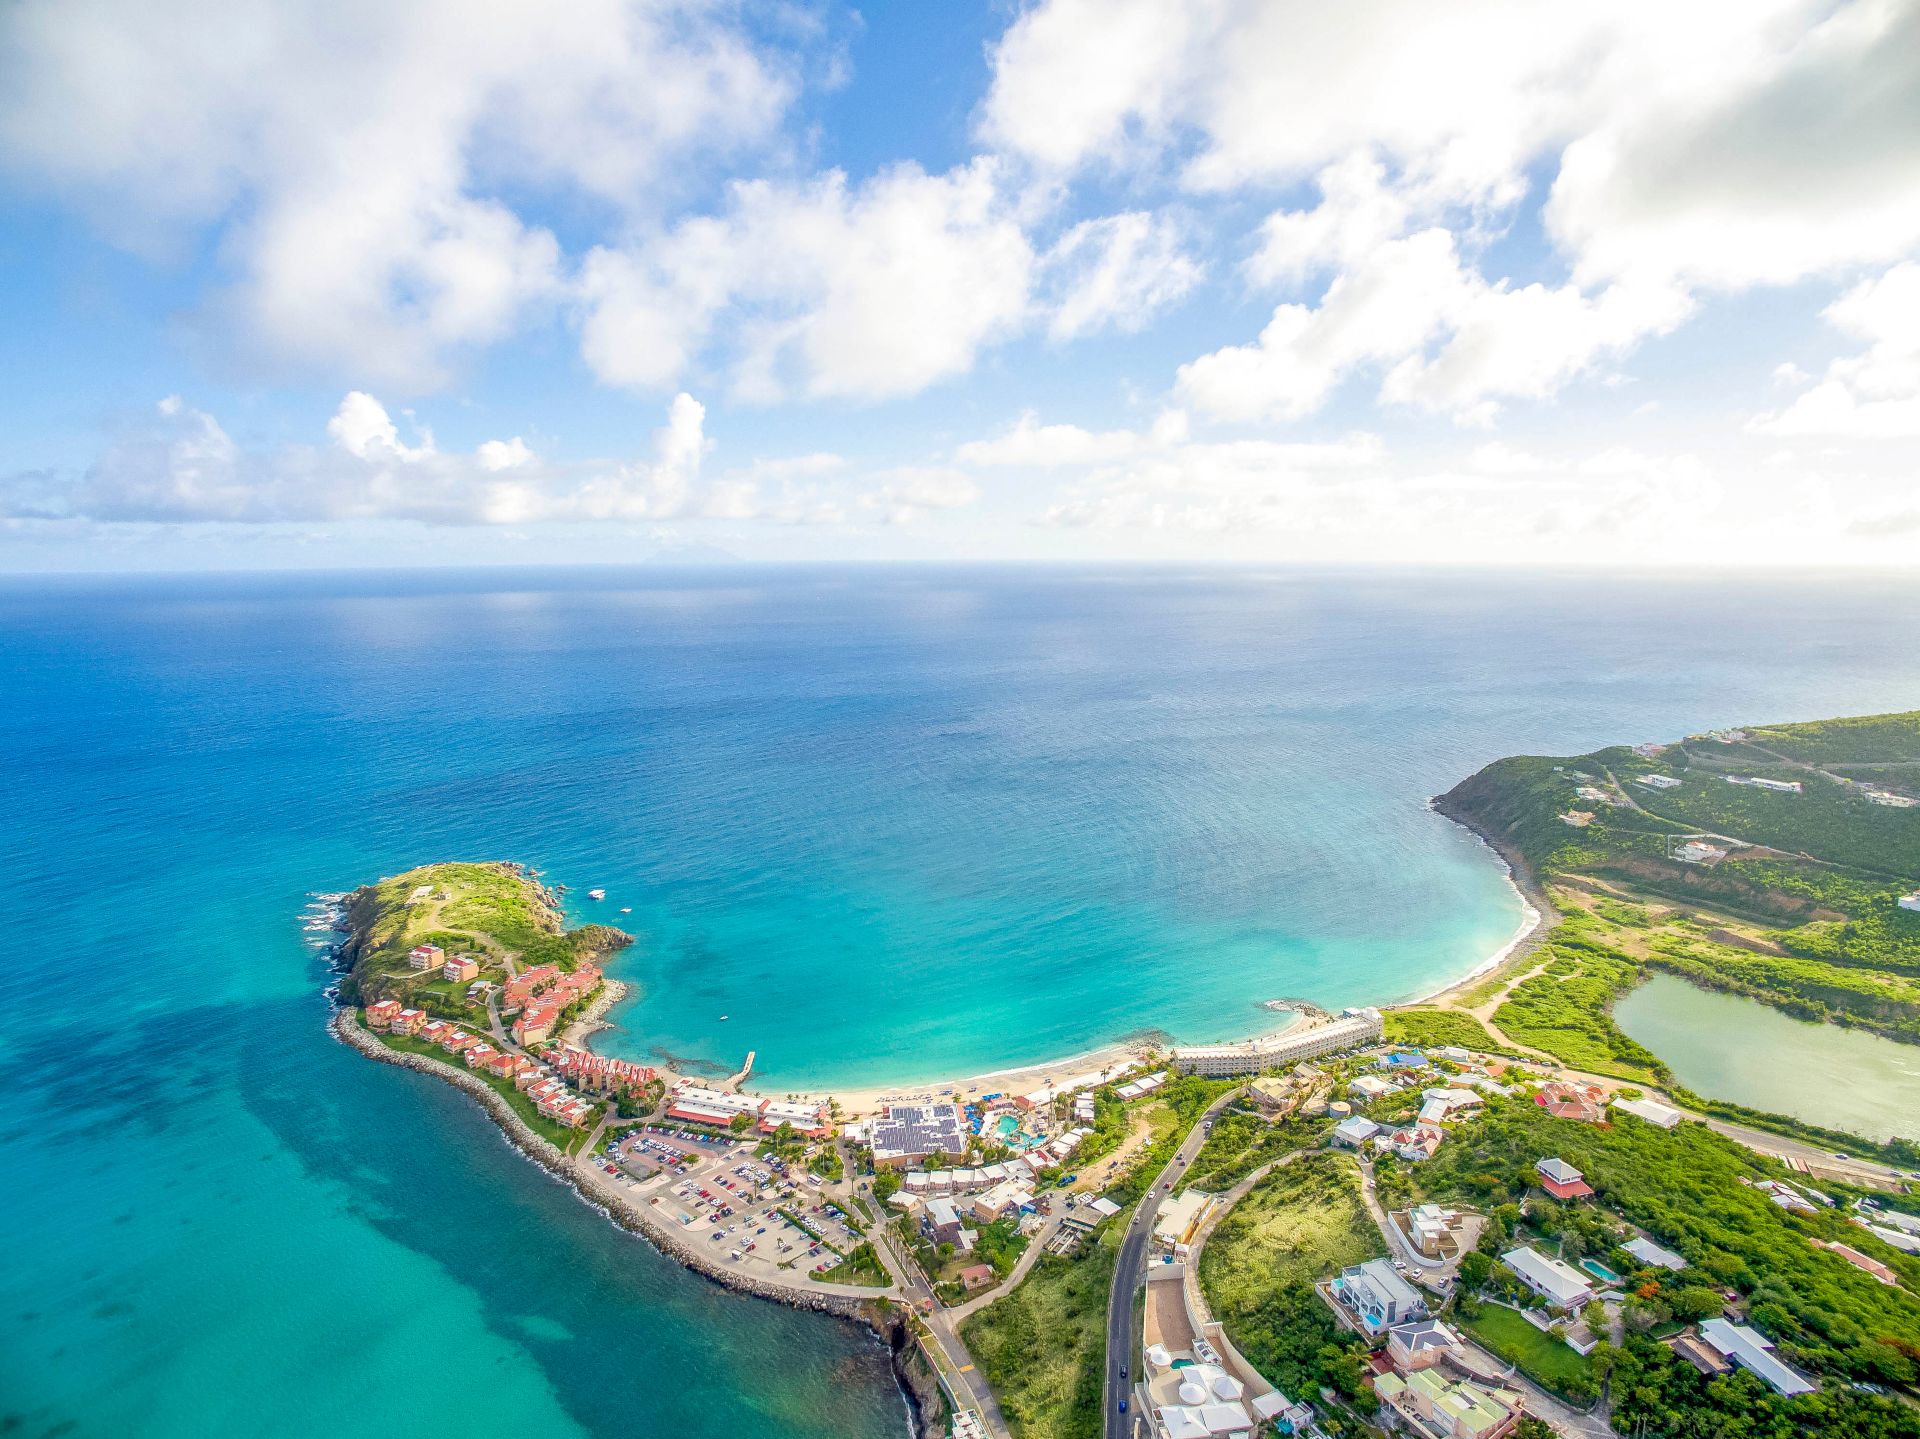 Très belle vue aérienne de l'île de Sint Maarten.